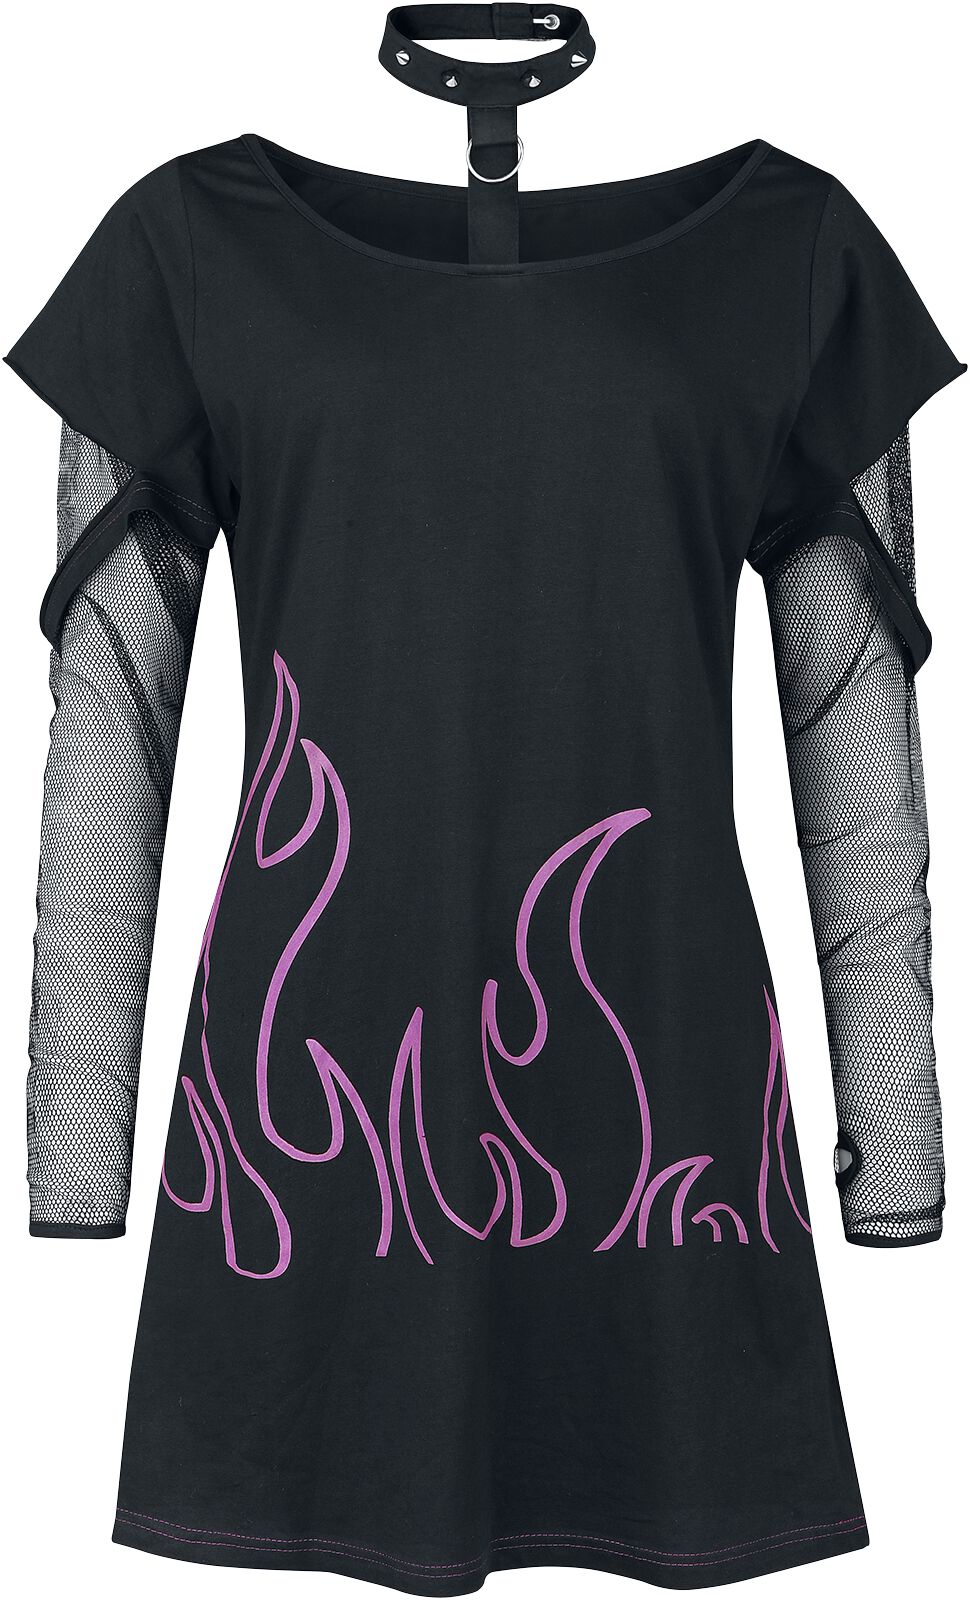 Heartless - Gothic Langarmshirt - Depths Of Hell Top - XS bis 4XL - für Damen - Größe XXL - schwarz/pink